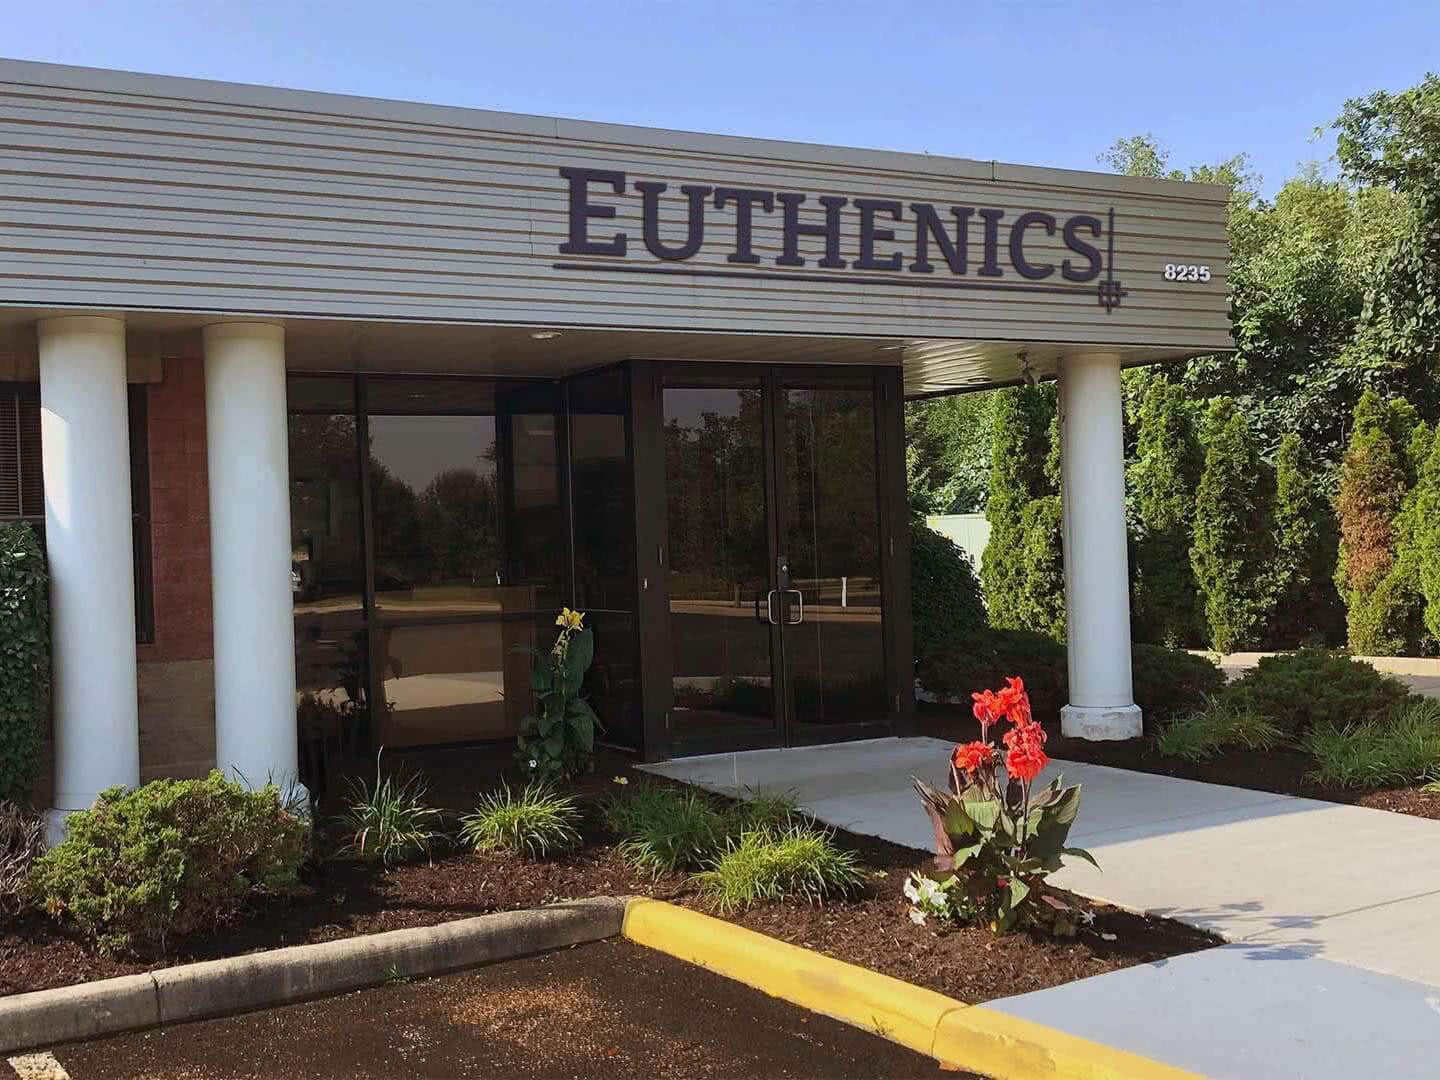 Euthenics Building